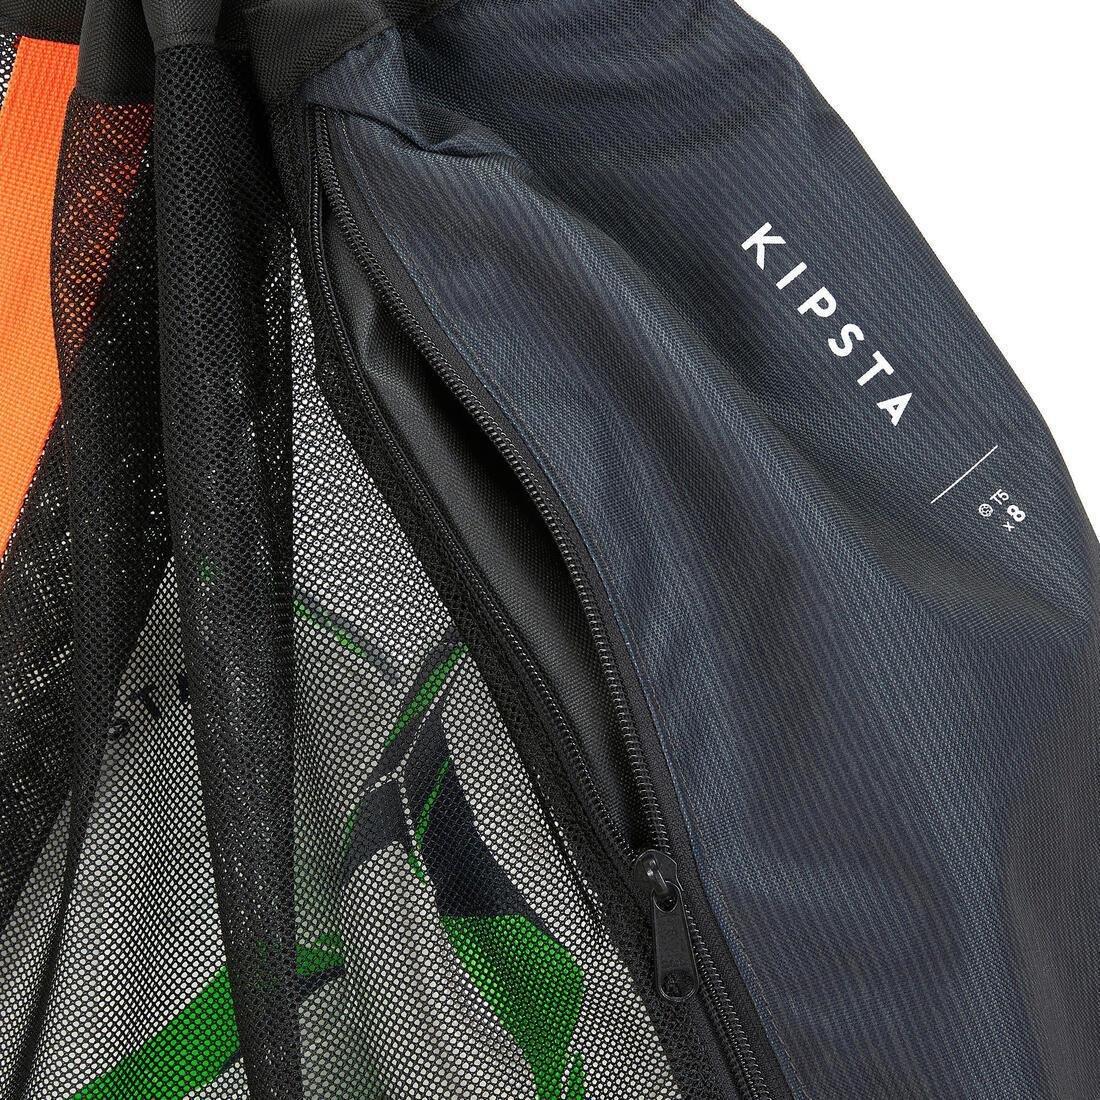 KIPSTA - 8-Ball Bag, Black